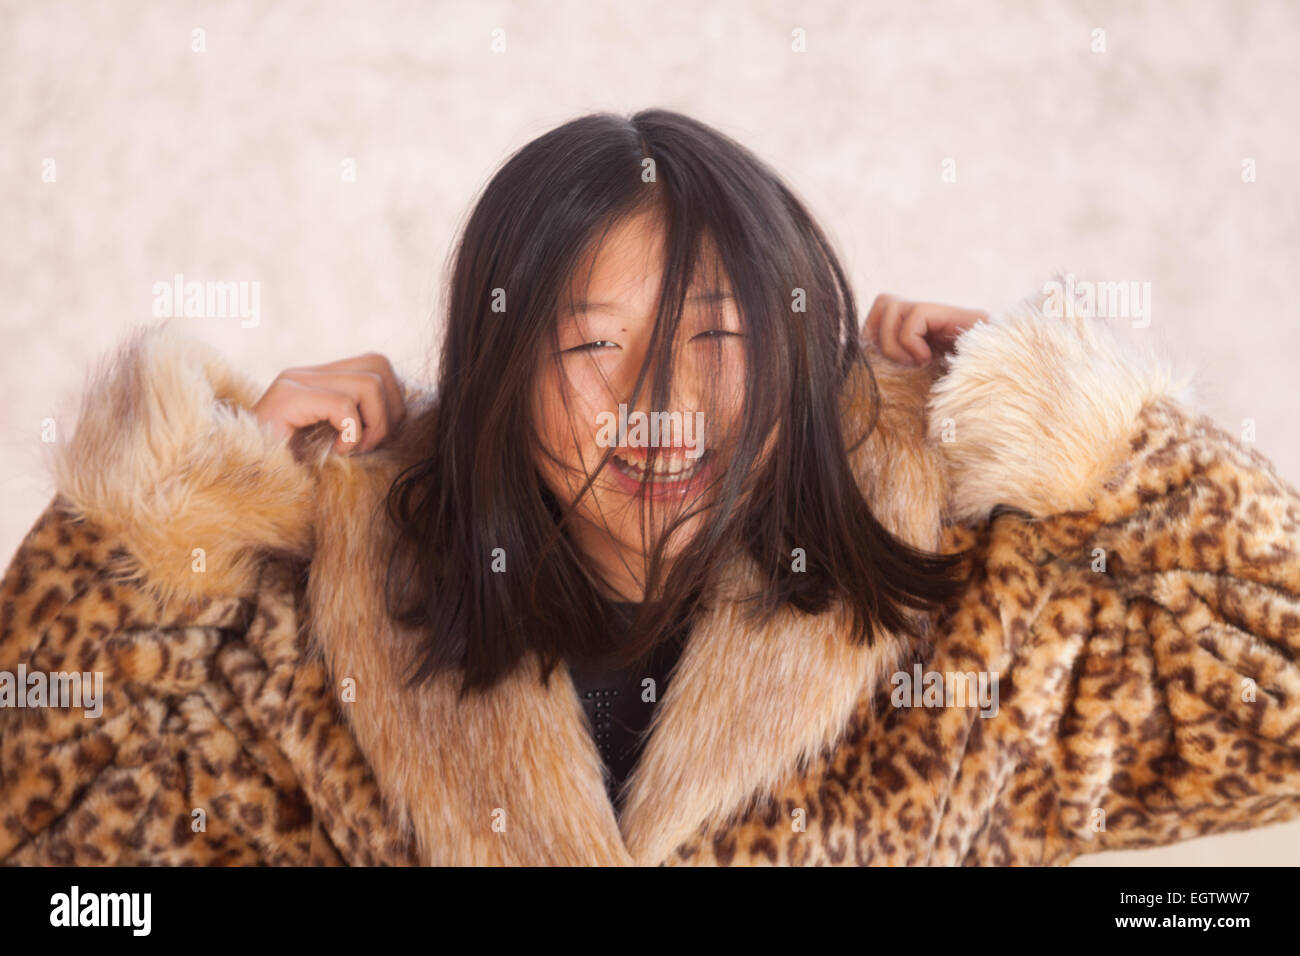 Sehr schöne chinesische Mädchen, gekleidet Lächeln glücklich mit einem ethnischen Mantel. Stockfoto